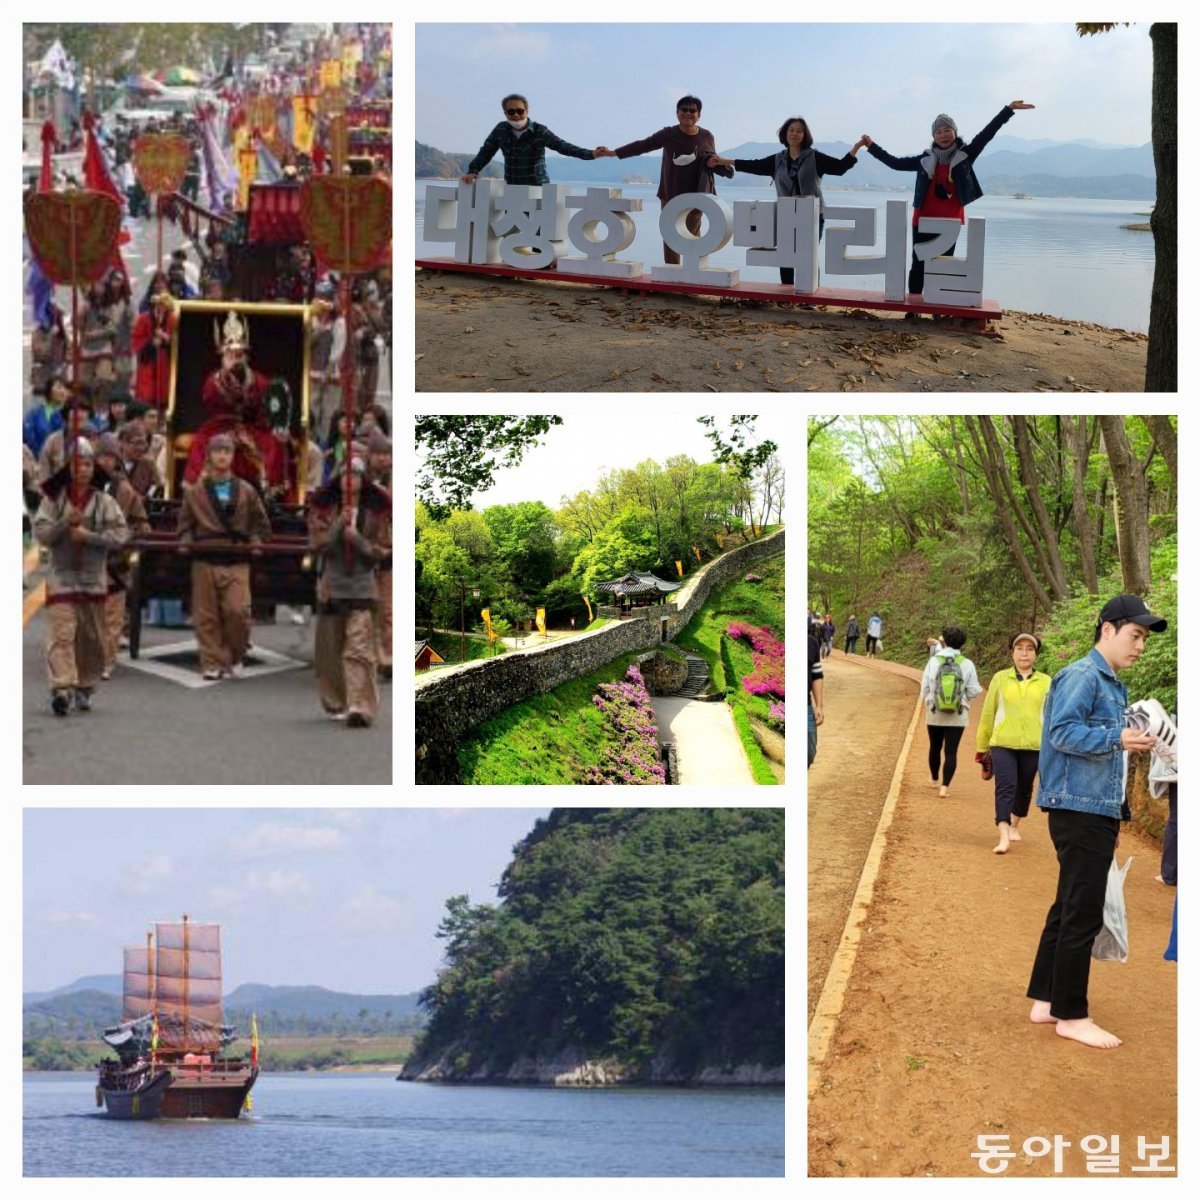 대전 공주 부여 익산 등 백제권 4개 자치단체가 마련한 연계 관광 프로그램이 8월 부터 진행된다. 이기진기자 doyoce@donga.com